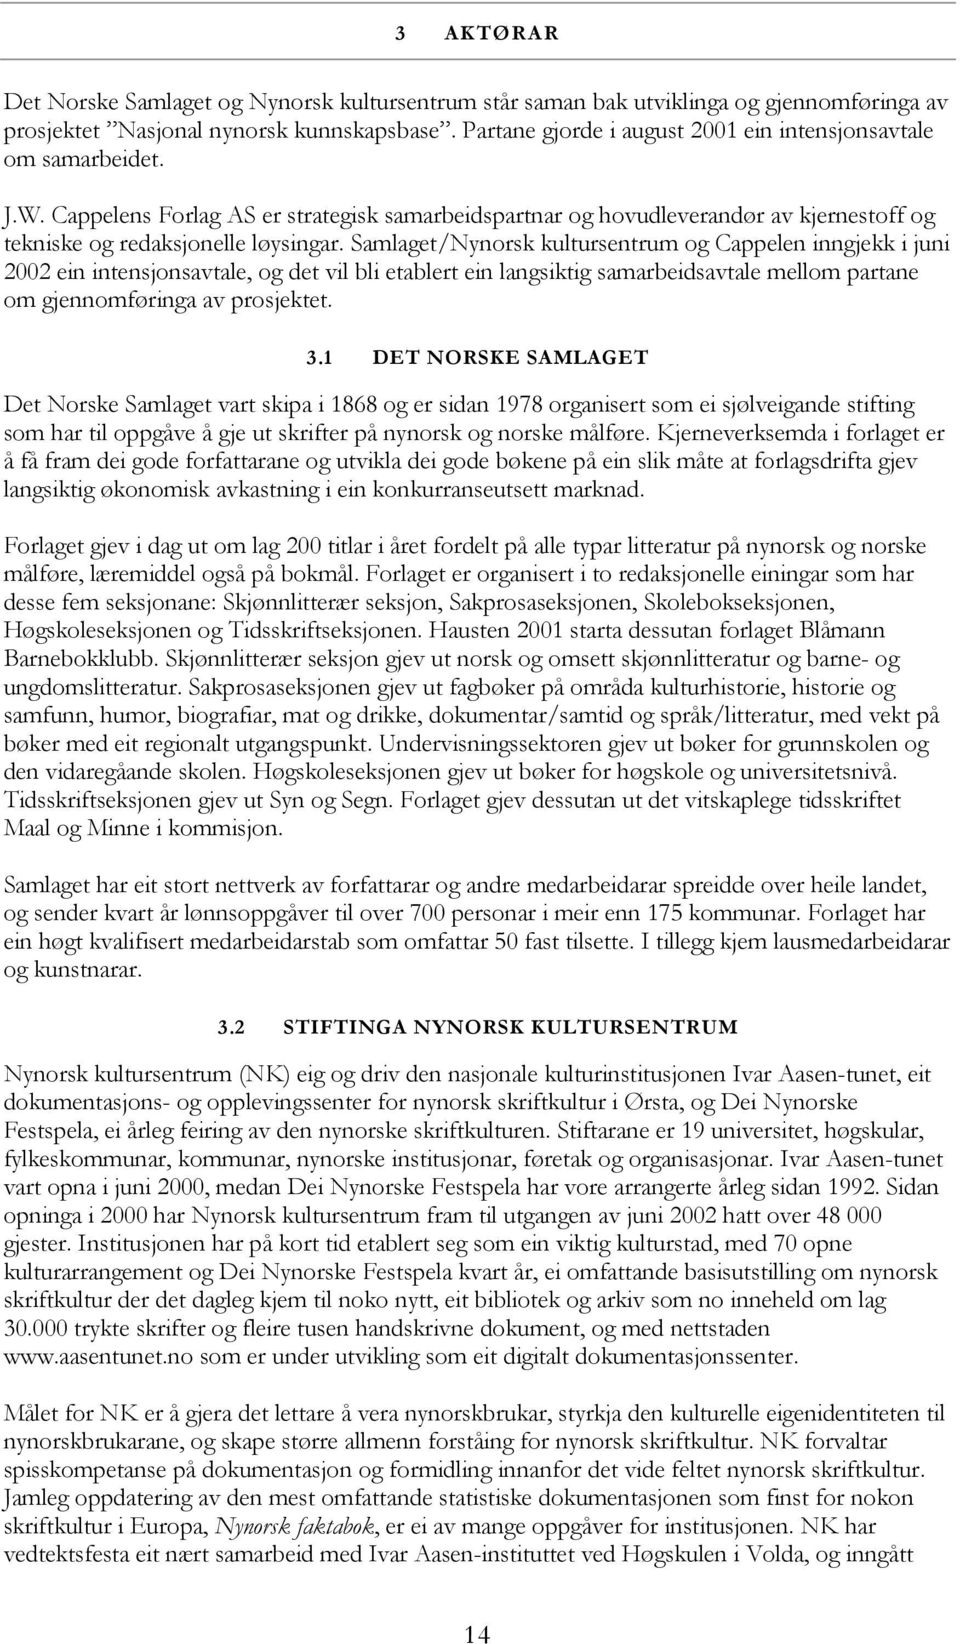 Samlaget/Nynorsk kultursentrum og Cappelen inngjekk i juni 2002 ein intensjonsavtale, og det vil bli etablert ein langsiktig samarbeidsavtale mellom partane om gjennomføringa av prosjektet. 3.